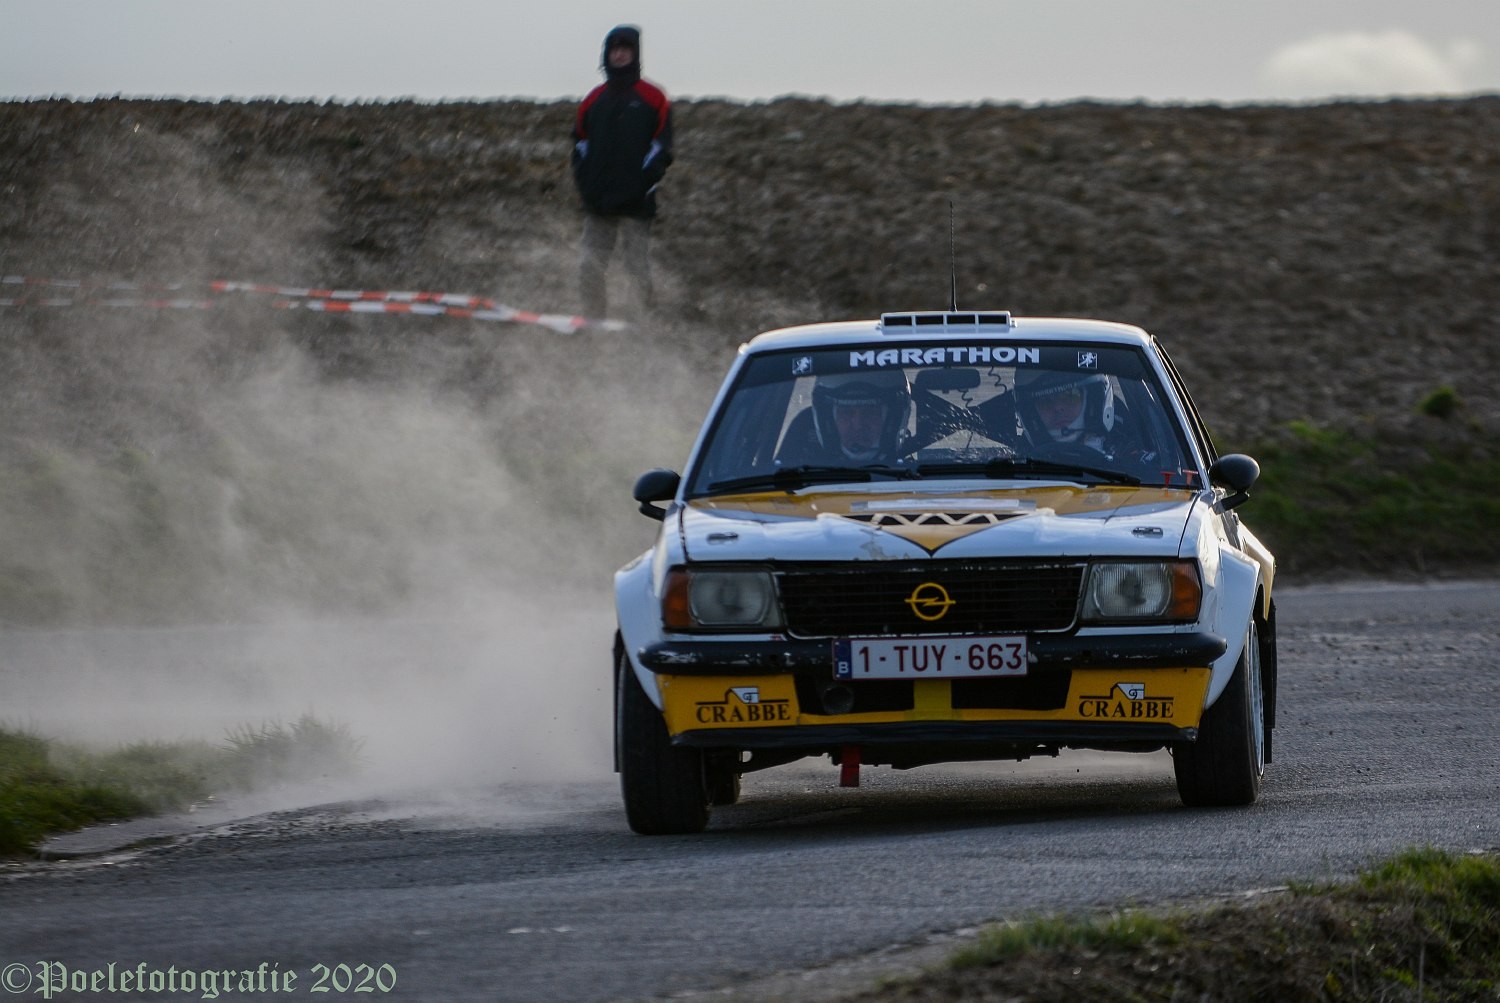 Foto-album Rallye de Hannut door Geert Evenepoel is toegevoegd.